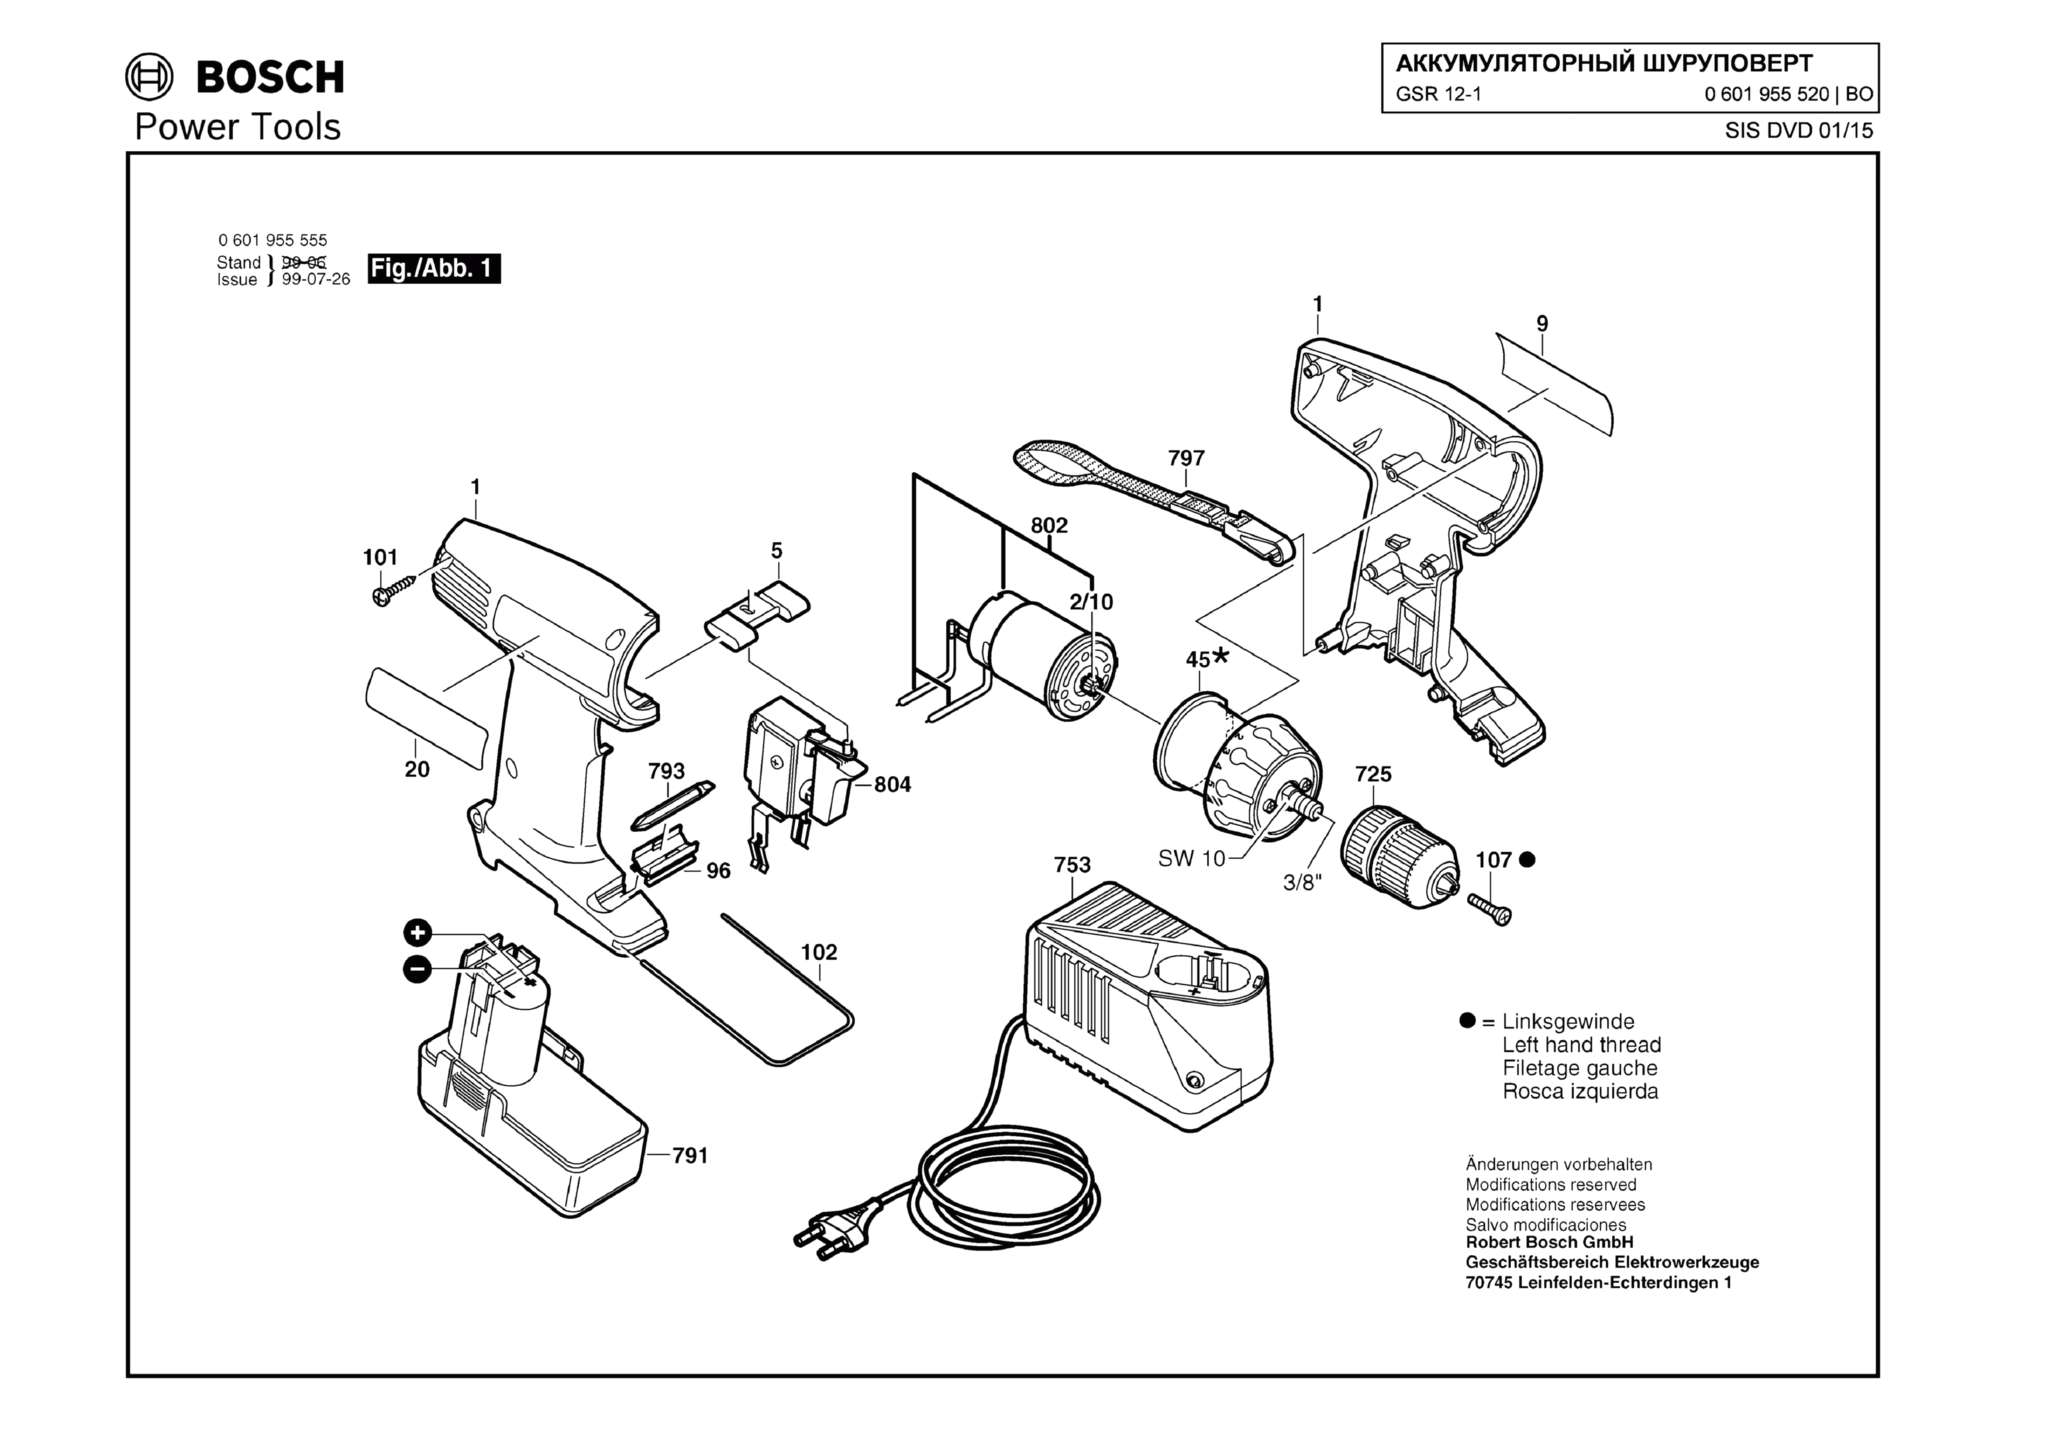 Запчасти, схема и деталировка Bosch GSR 12-1 (ТИП 0601955520)